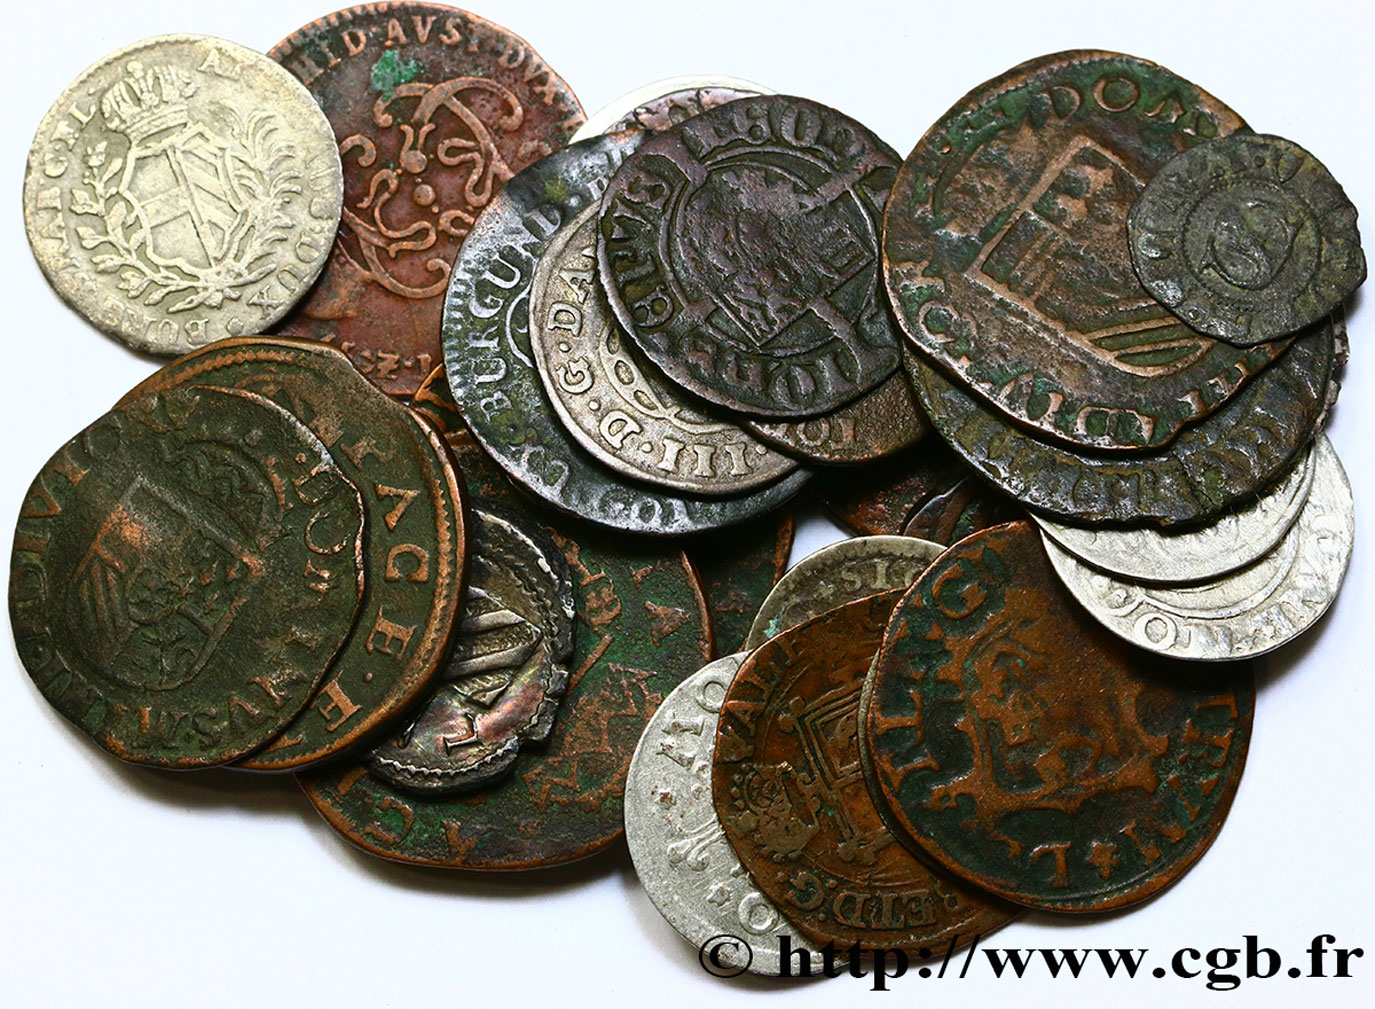 WELTMÜNZEN LOTS Lot de 30 Monnaies étrangères en cuivre et billon n.d  fSS 